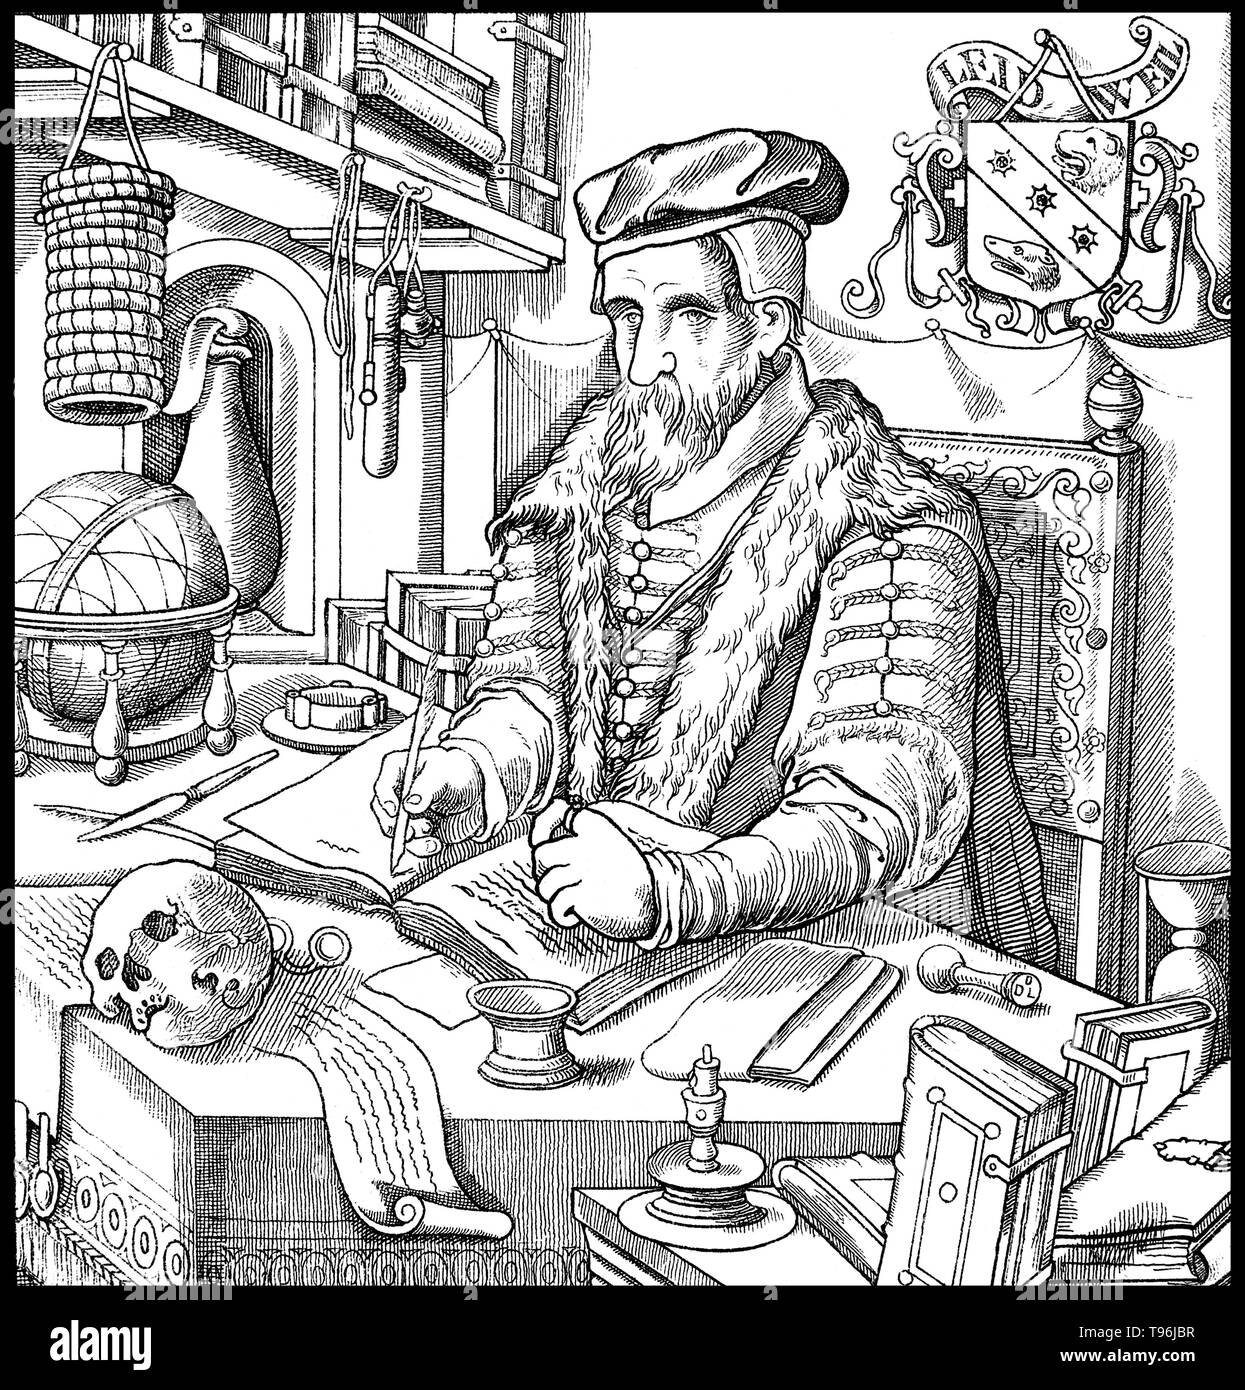 Duncan Liddel (1561 - 17. Dezember 1613) war ein schottischer Mathematiker, Physiker und Astronom. Liddel War als Mathematiker in Deutschland, wo er sagte, war der Erste gewesen zu sein, um die Astronomie von Kopernikus zu lehren und von Tycho Brahe Seite an Seite mit dem Ptolemäischen System angeblich. Caselius die Auffassung vertreten, dass die liddel erster Lehrer war der System brahes; und Brahe beschwerte sich von Plagiaten. Stockfoto